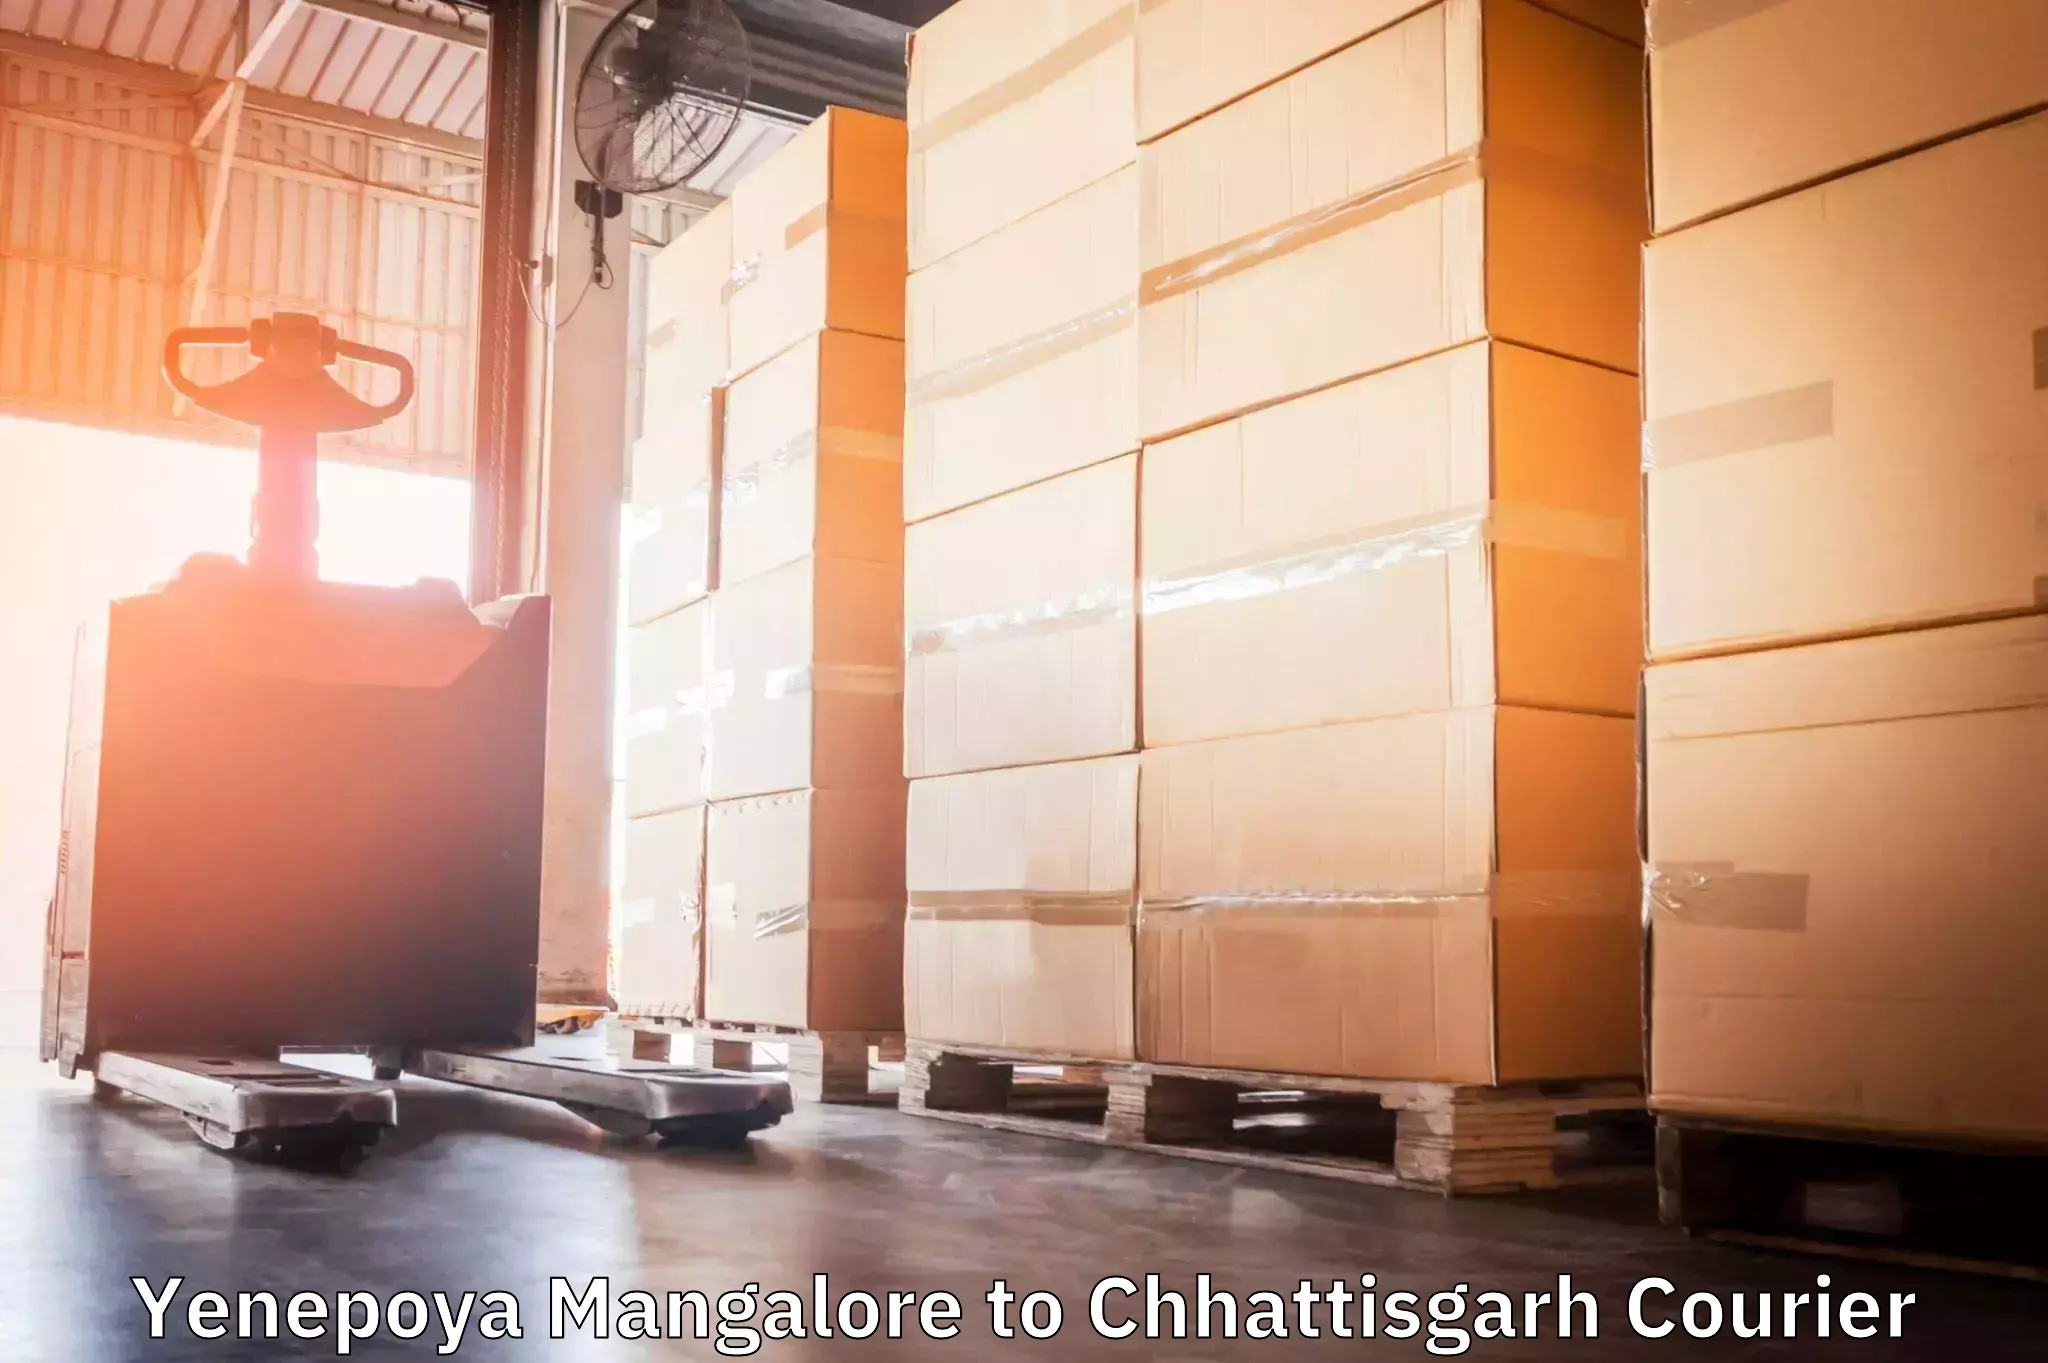 Cost-effective courier options Yenepoya Mangalore to Raigarh Chhattisgarh